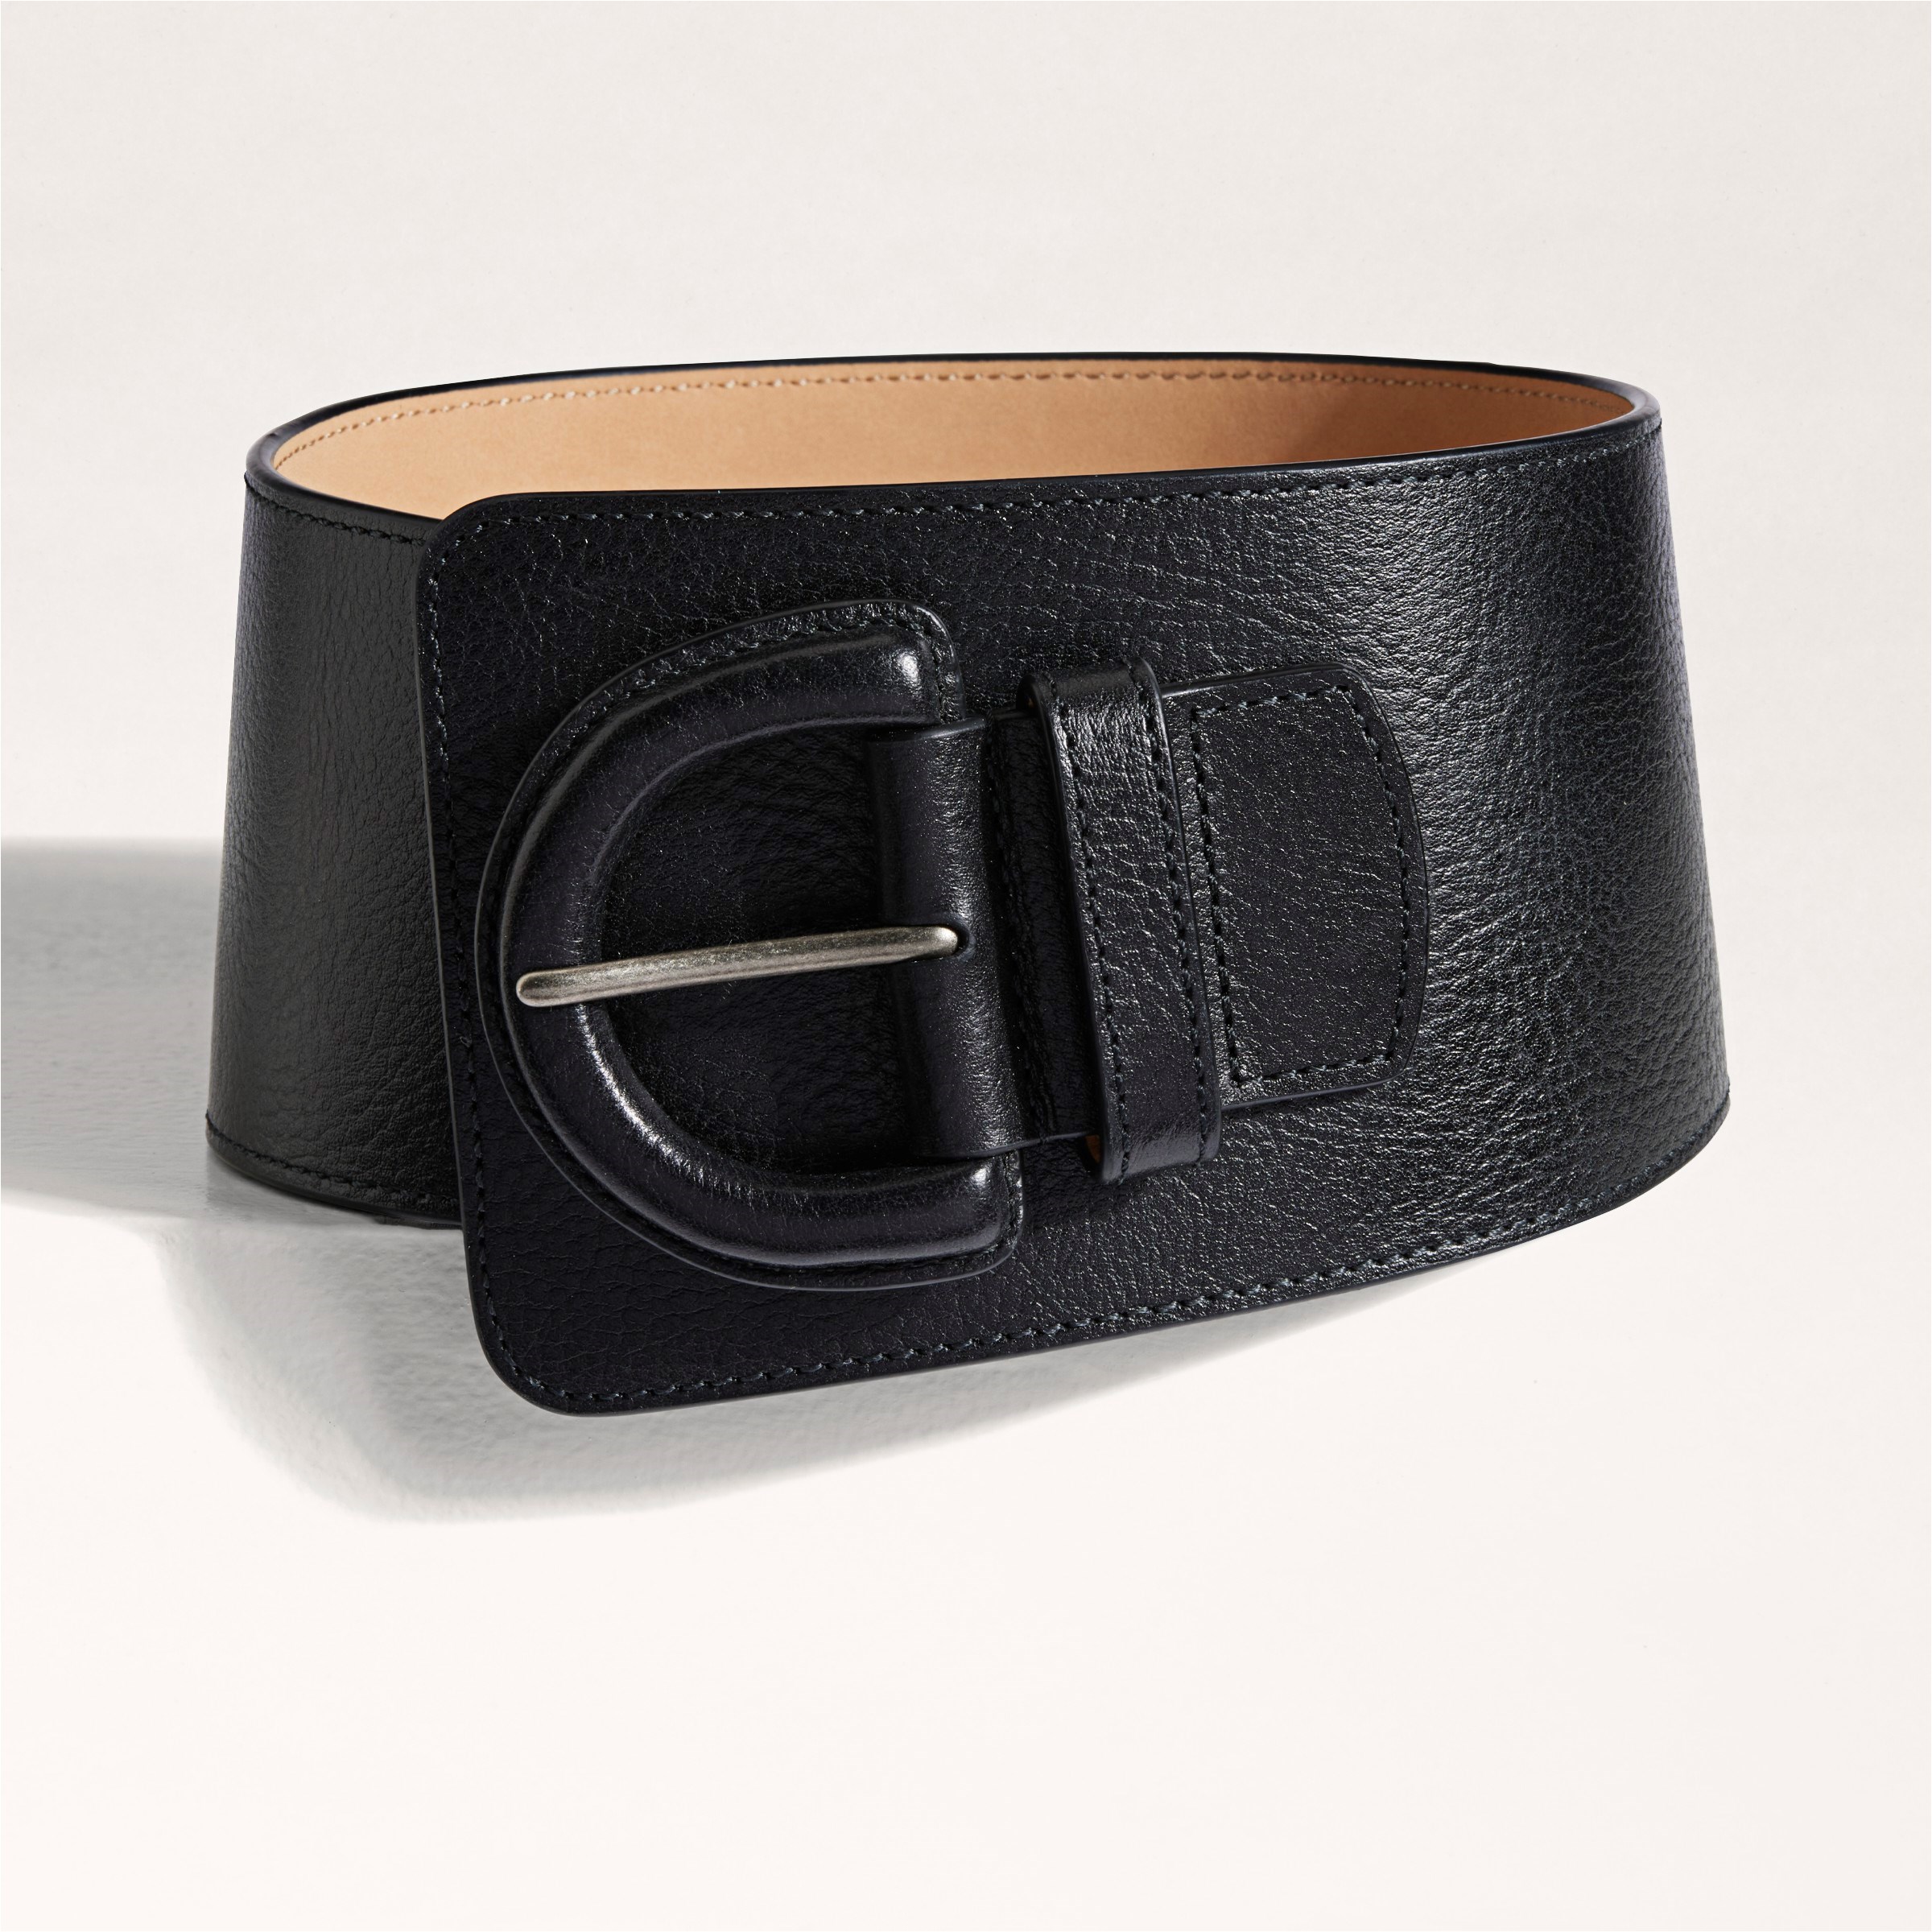 Slimming Belt/Corset Available To order 𝐖𝐡𝐚𝐭𝐬𝐀𝐩𝐩 𝐮𝐬 - 504 45340 /  50466186 Visit our website www.afeefonline.com to order 𝐏𝐚𝐲 𝐜𝐚𝐬𝐡  𝐨𝐧…